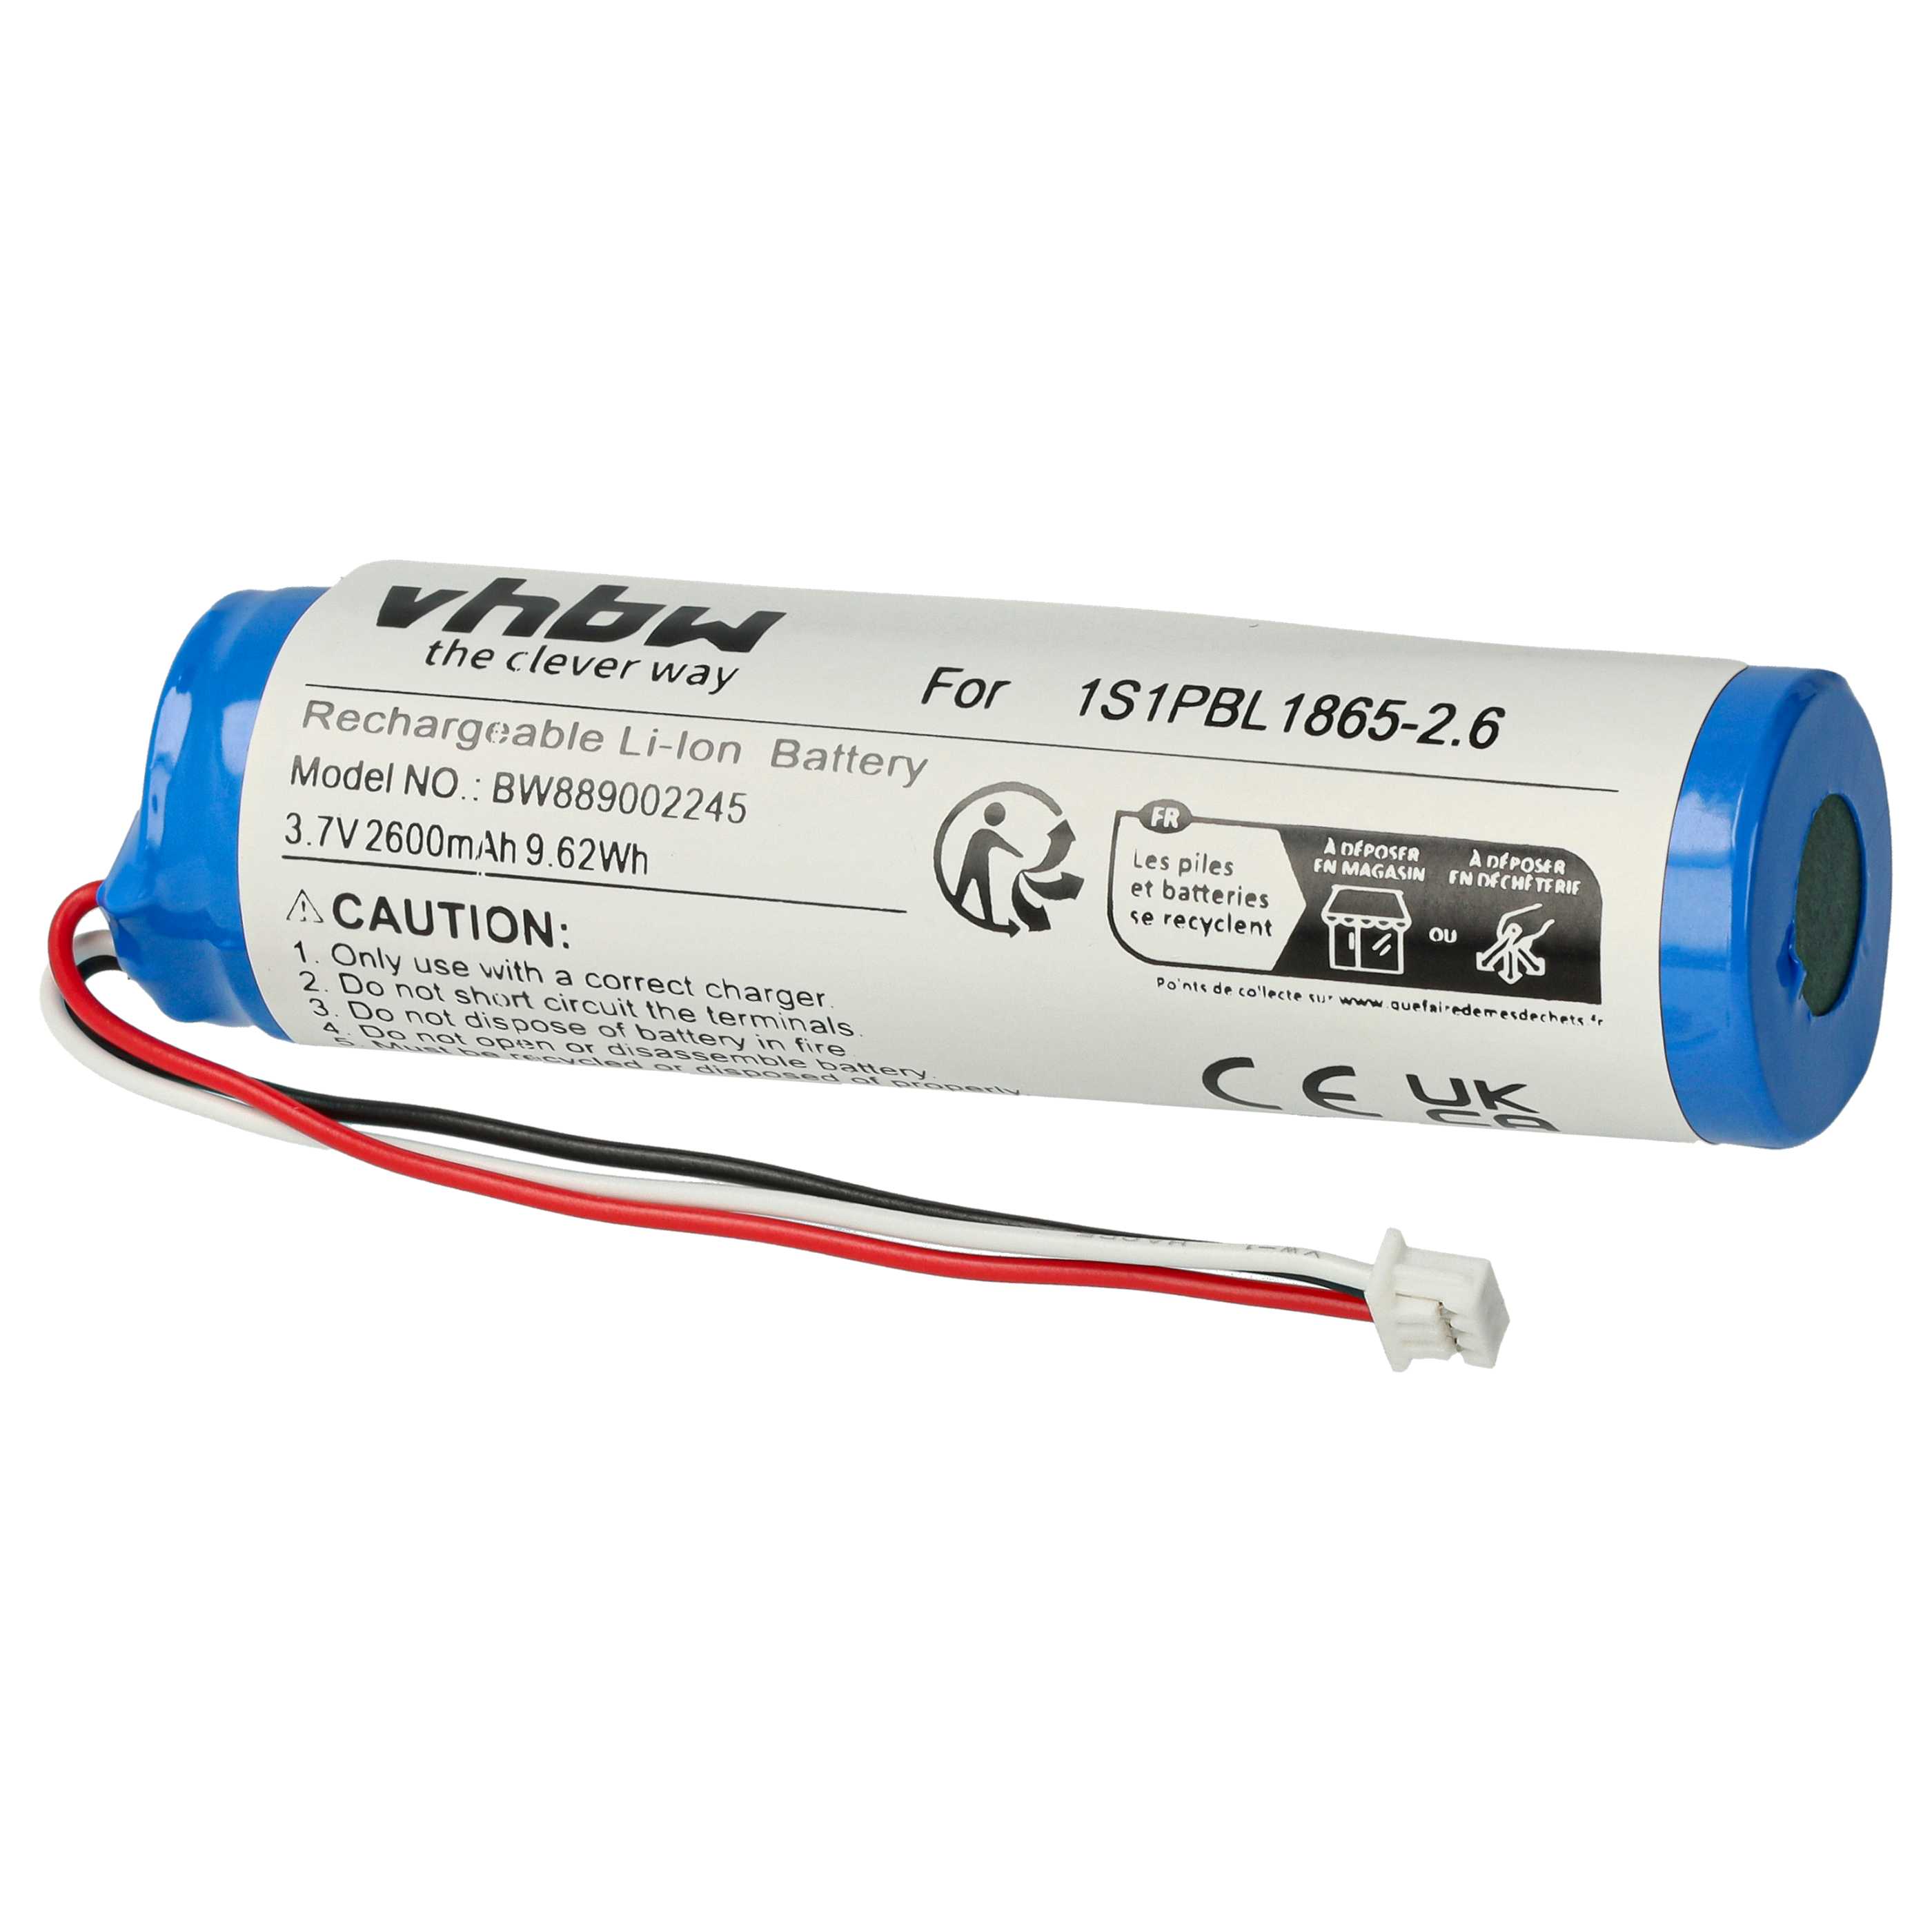 Batterie remplace Philips 1S1PBL1865-2.6 pour moniteur bébé - 2600mAh 3,7V Li-ion